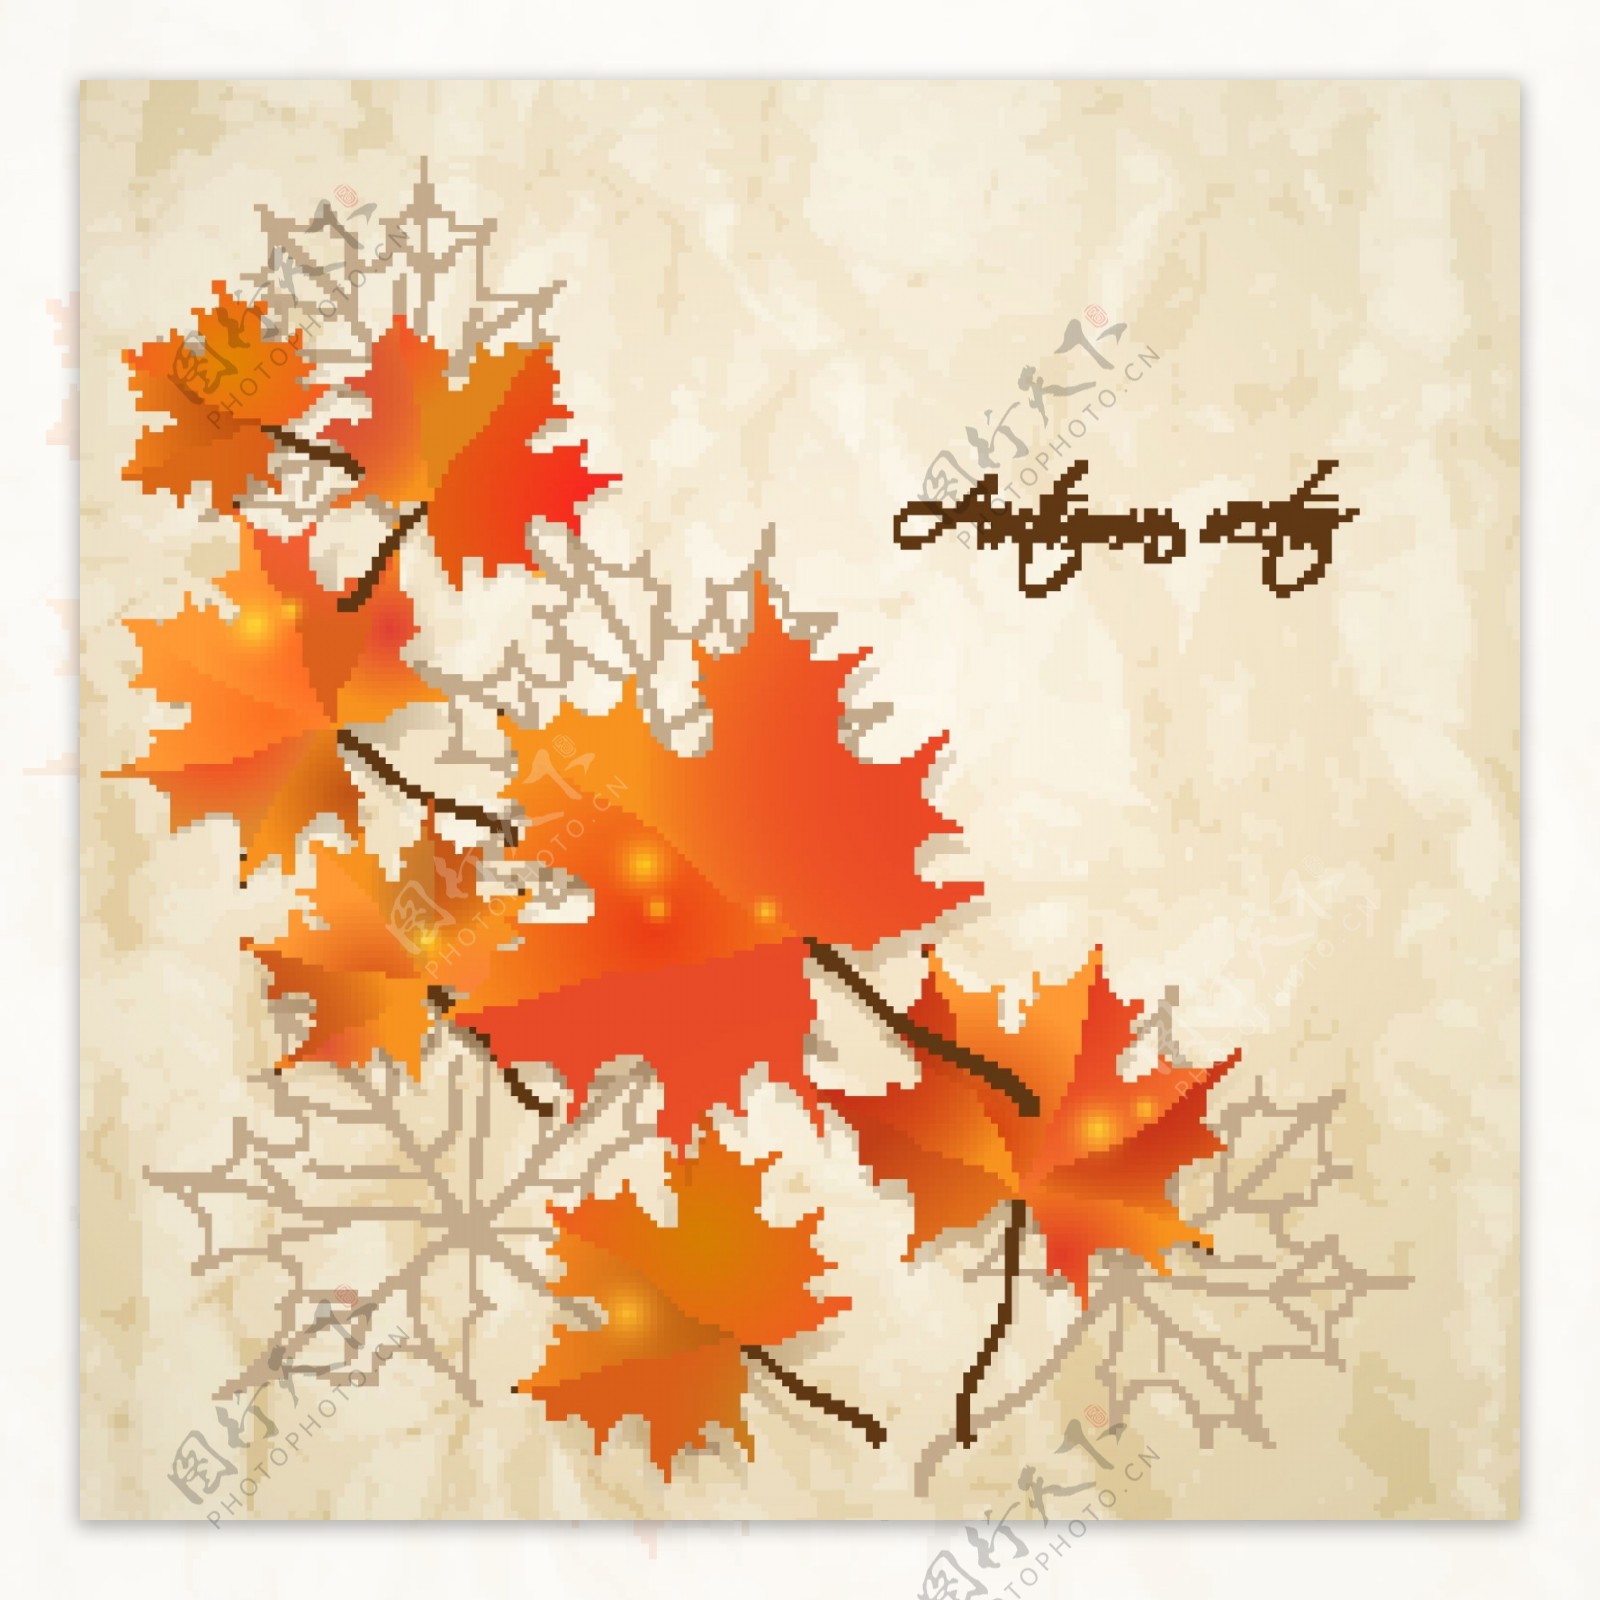 秋天树叶背景边框